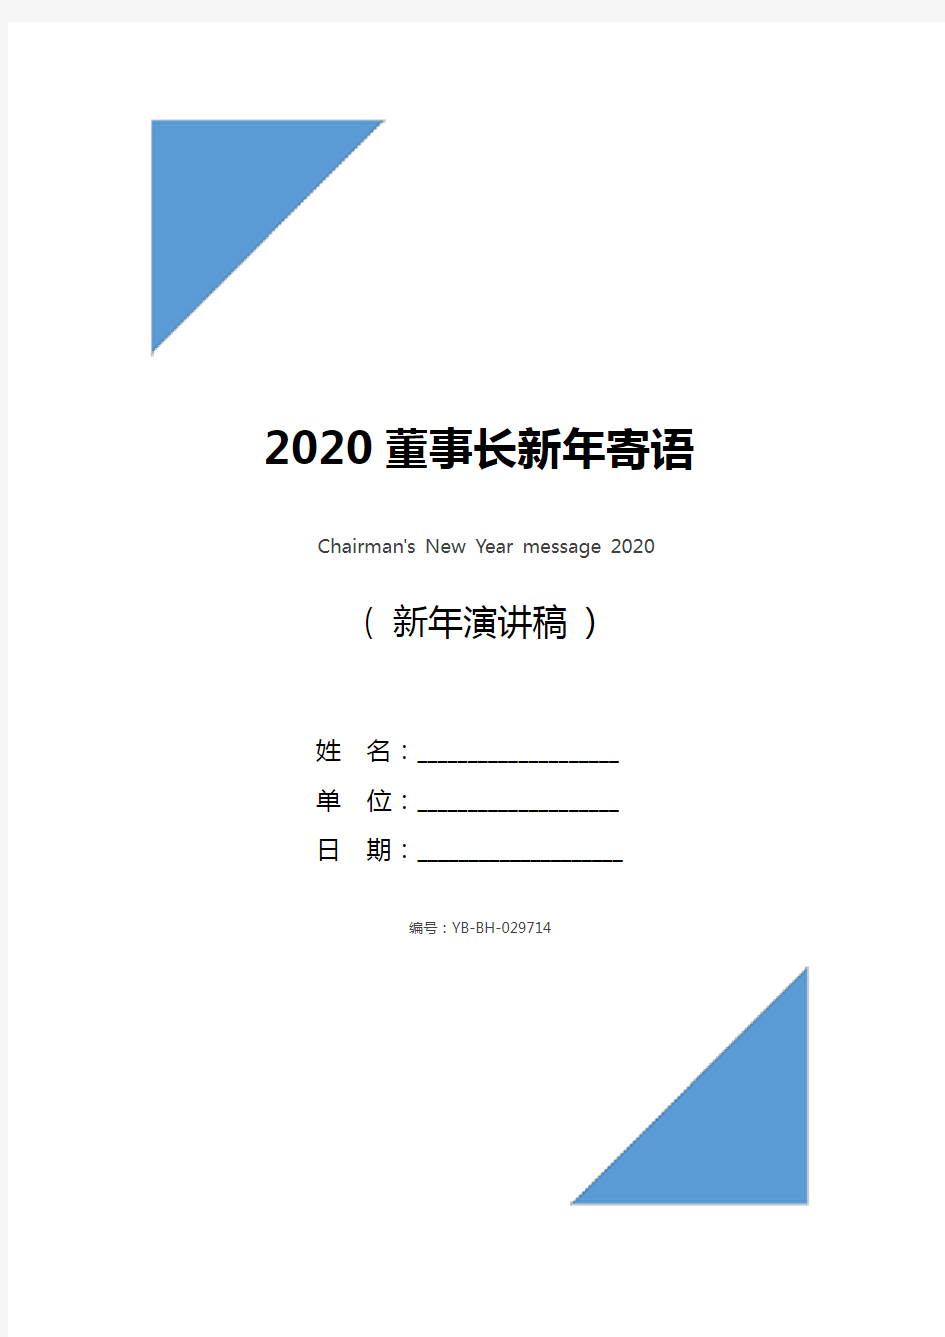 2020董事长新年寄语_1